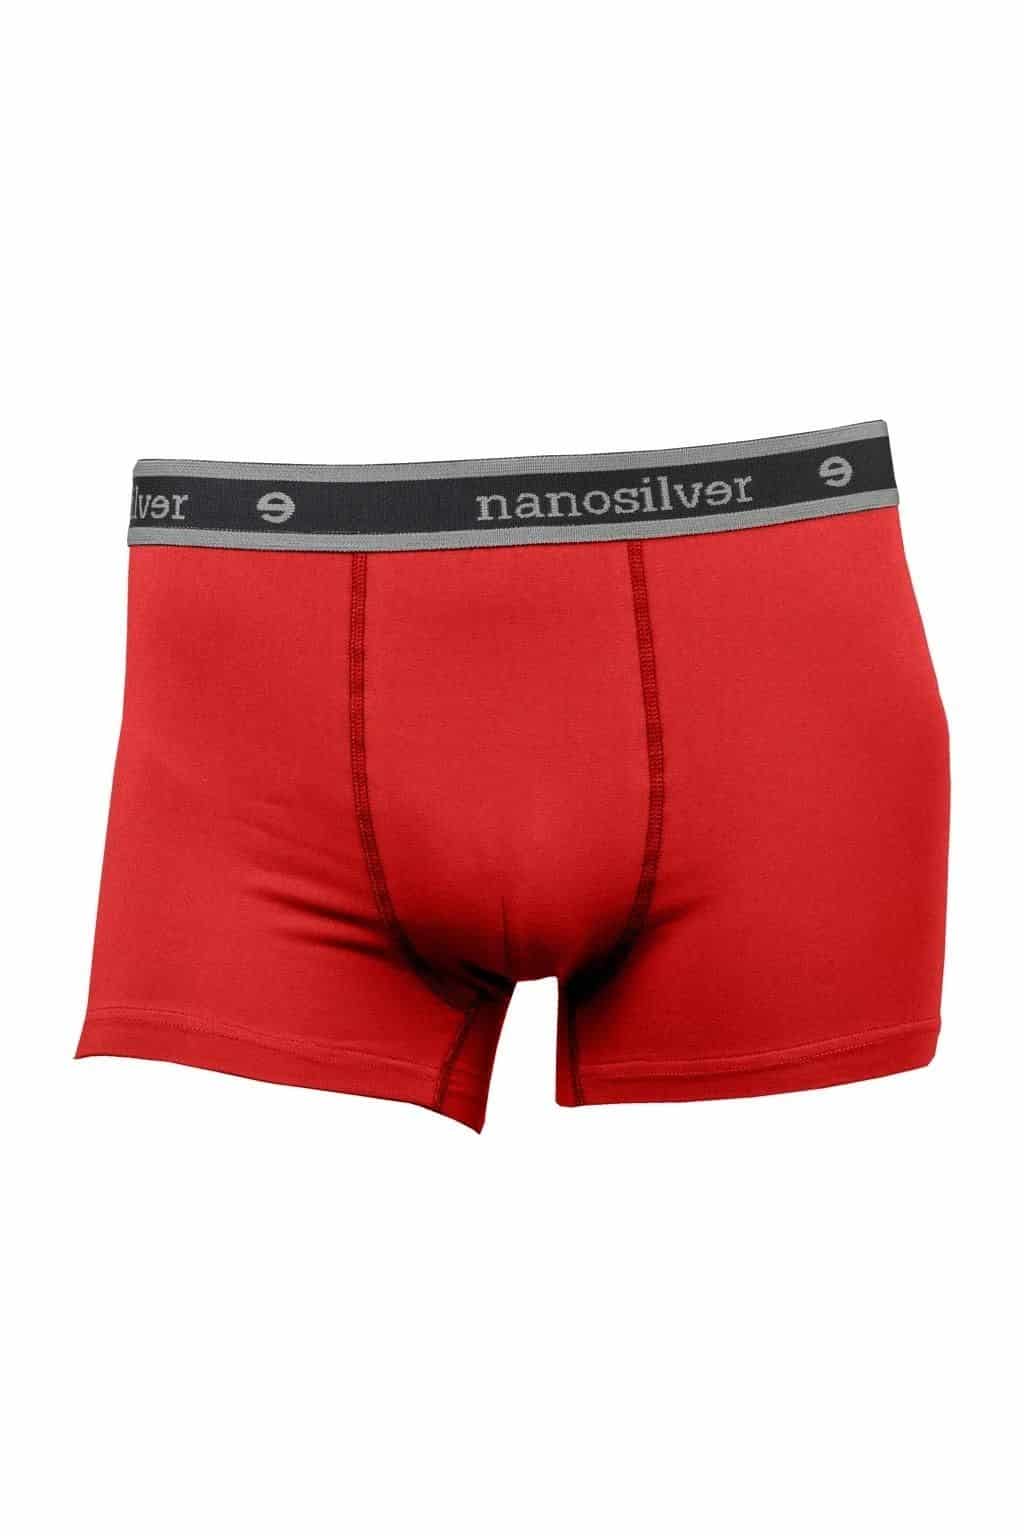 nanosilver® Nano boxerky s gumou nanosilver bez zadního švu – červené Velikost: M